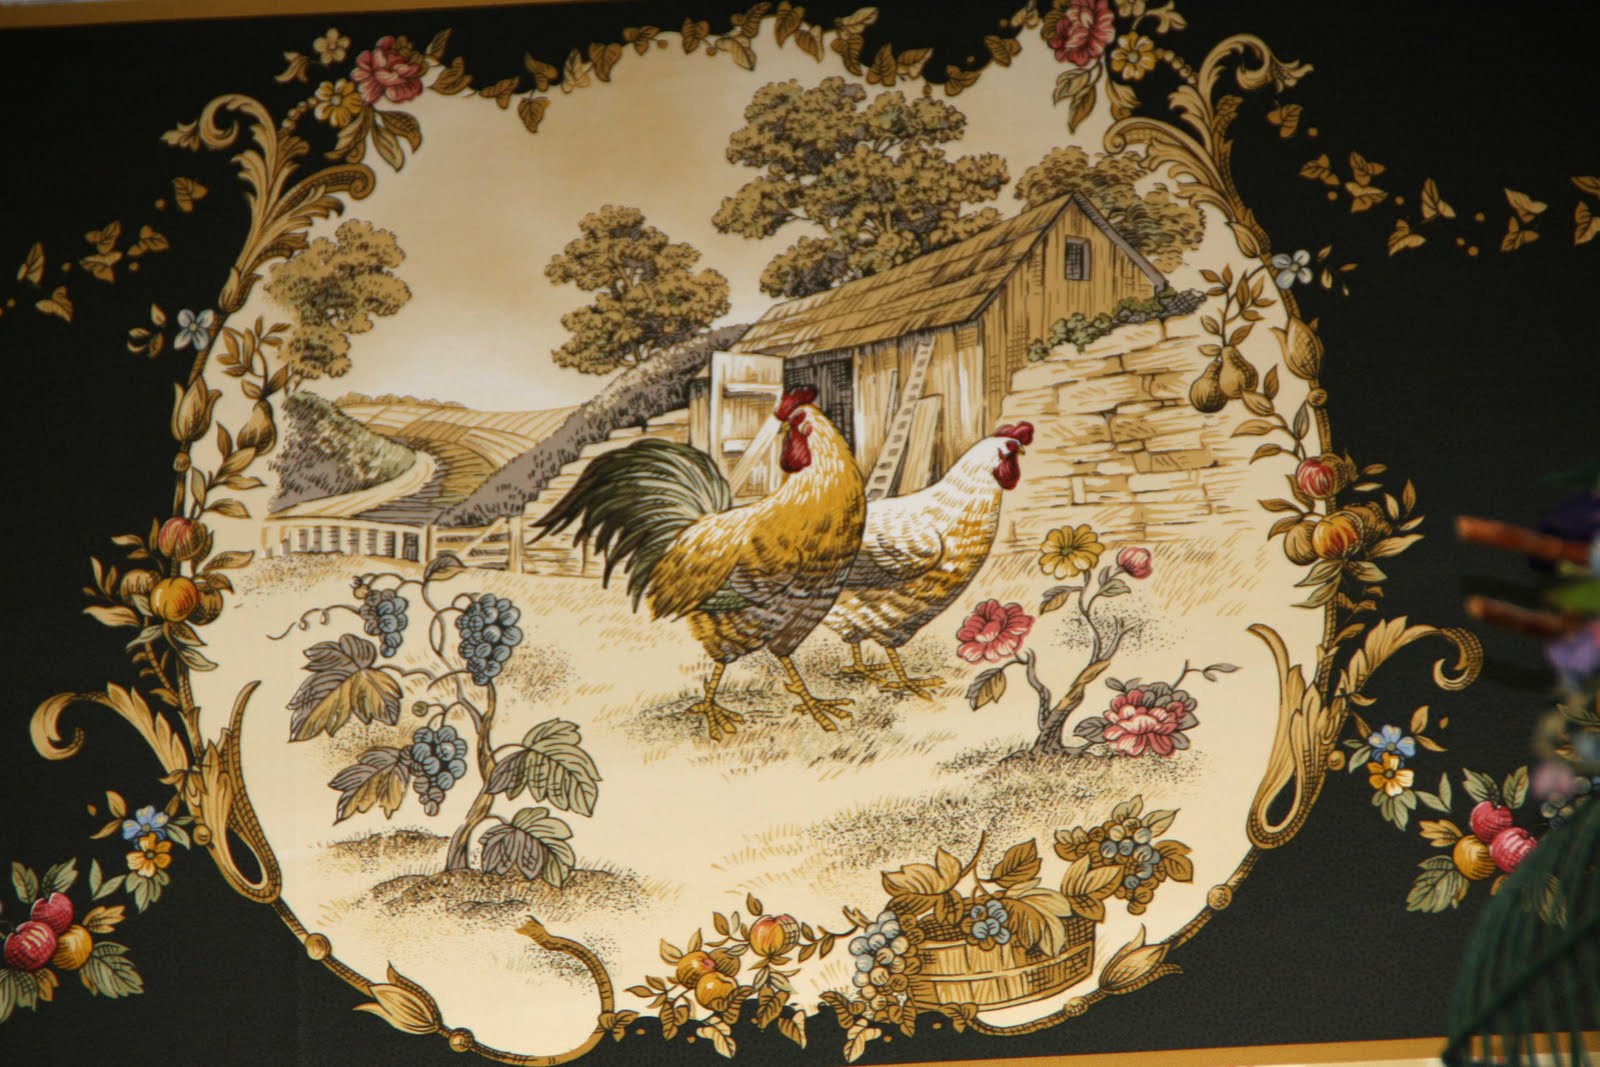 bordures de papier peint pour cuisine,poulet,coq,textile,oiseau,vaisselle